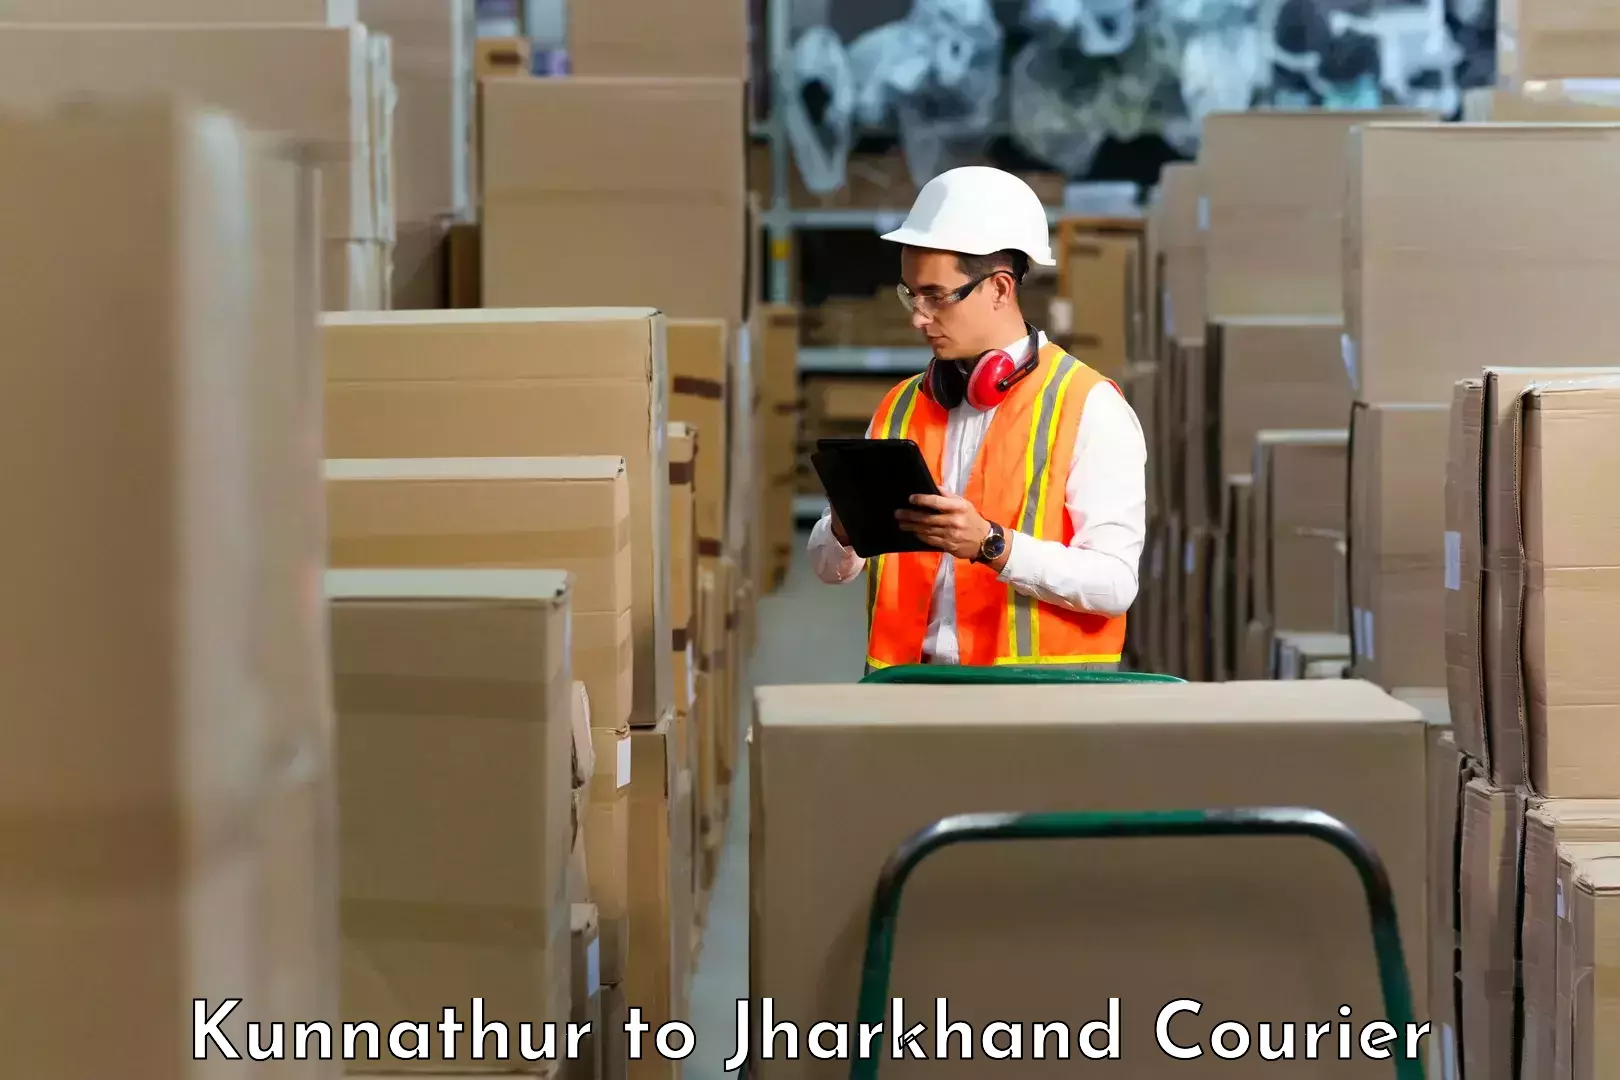 Modern courier technology Kunnathur to Jharkhand